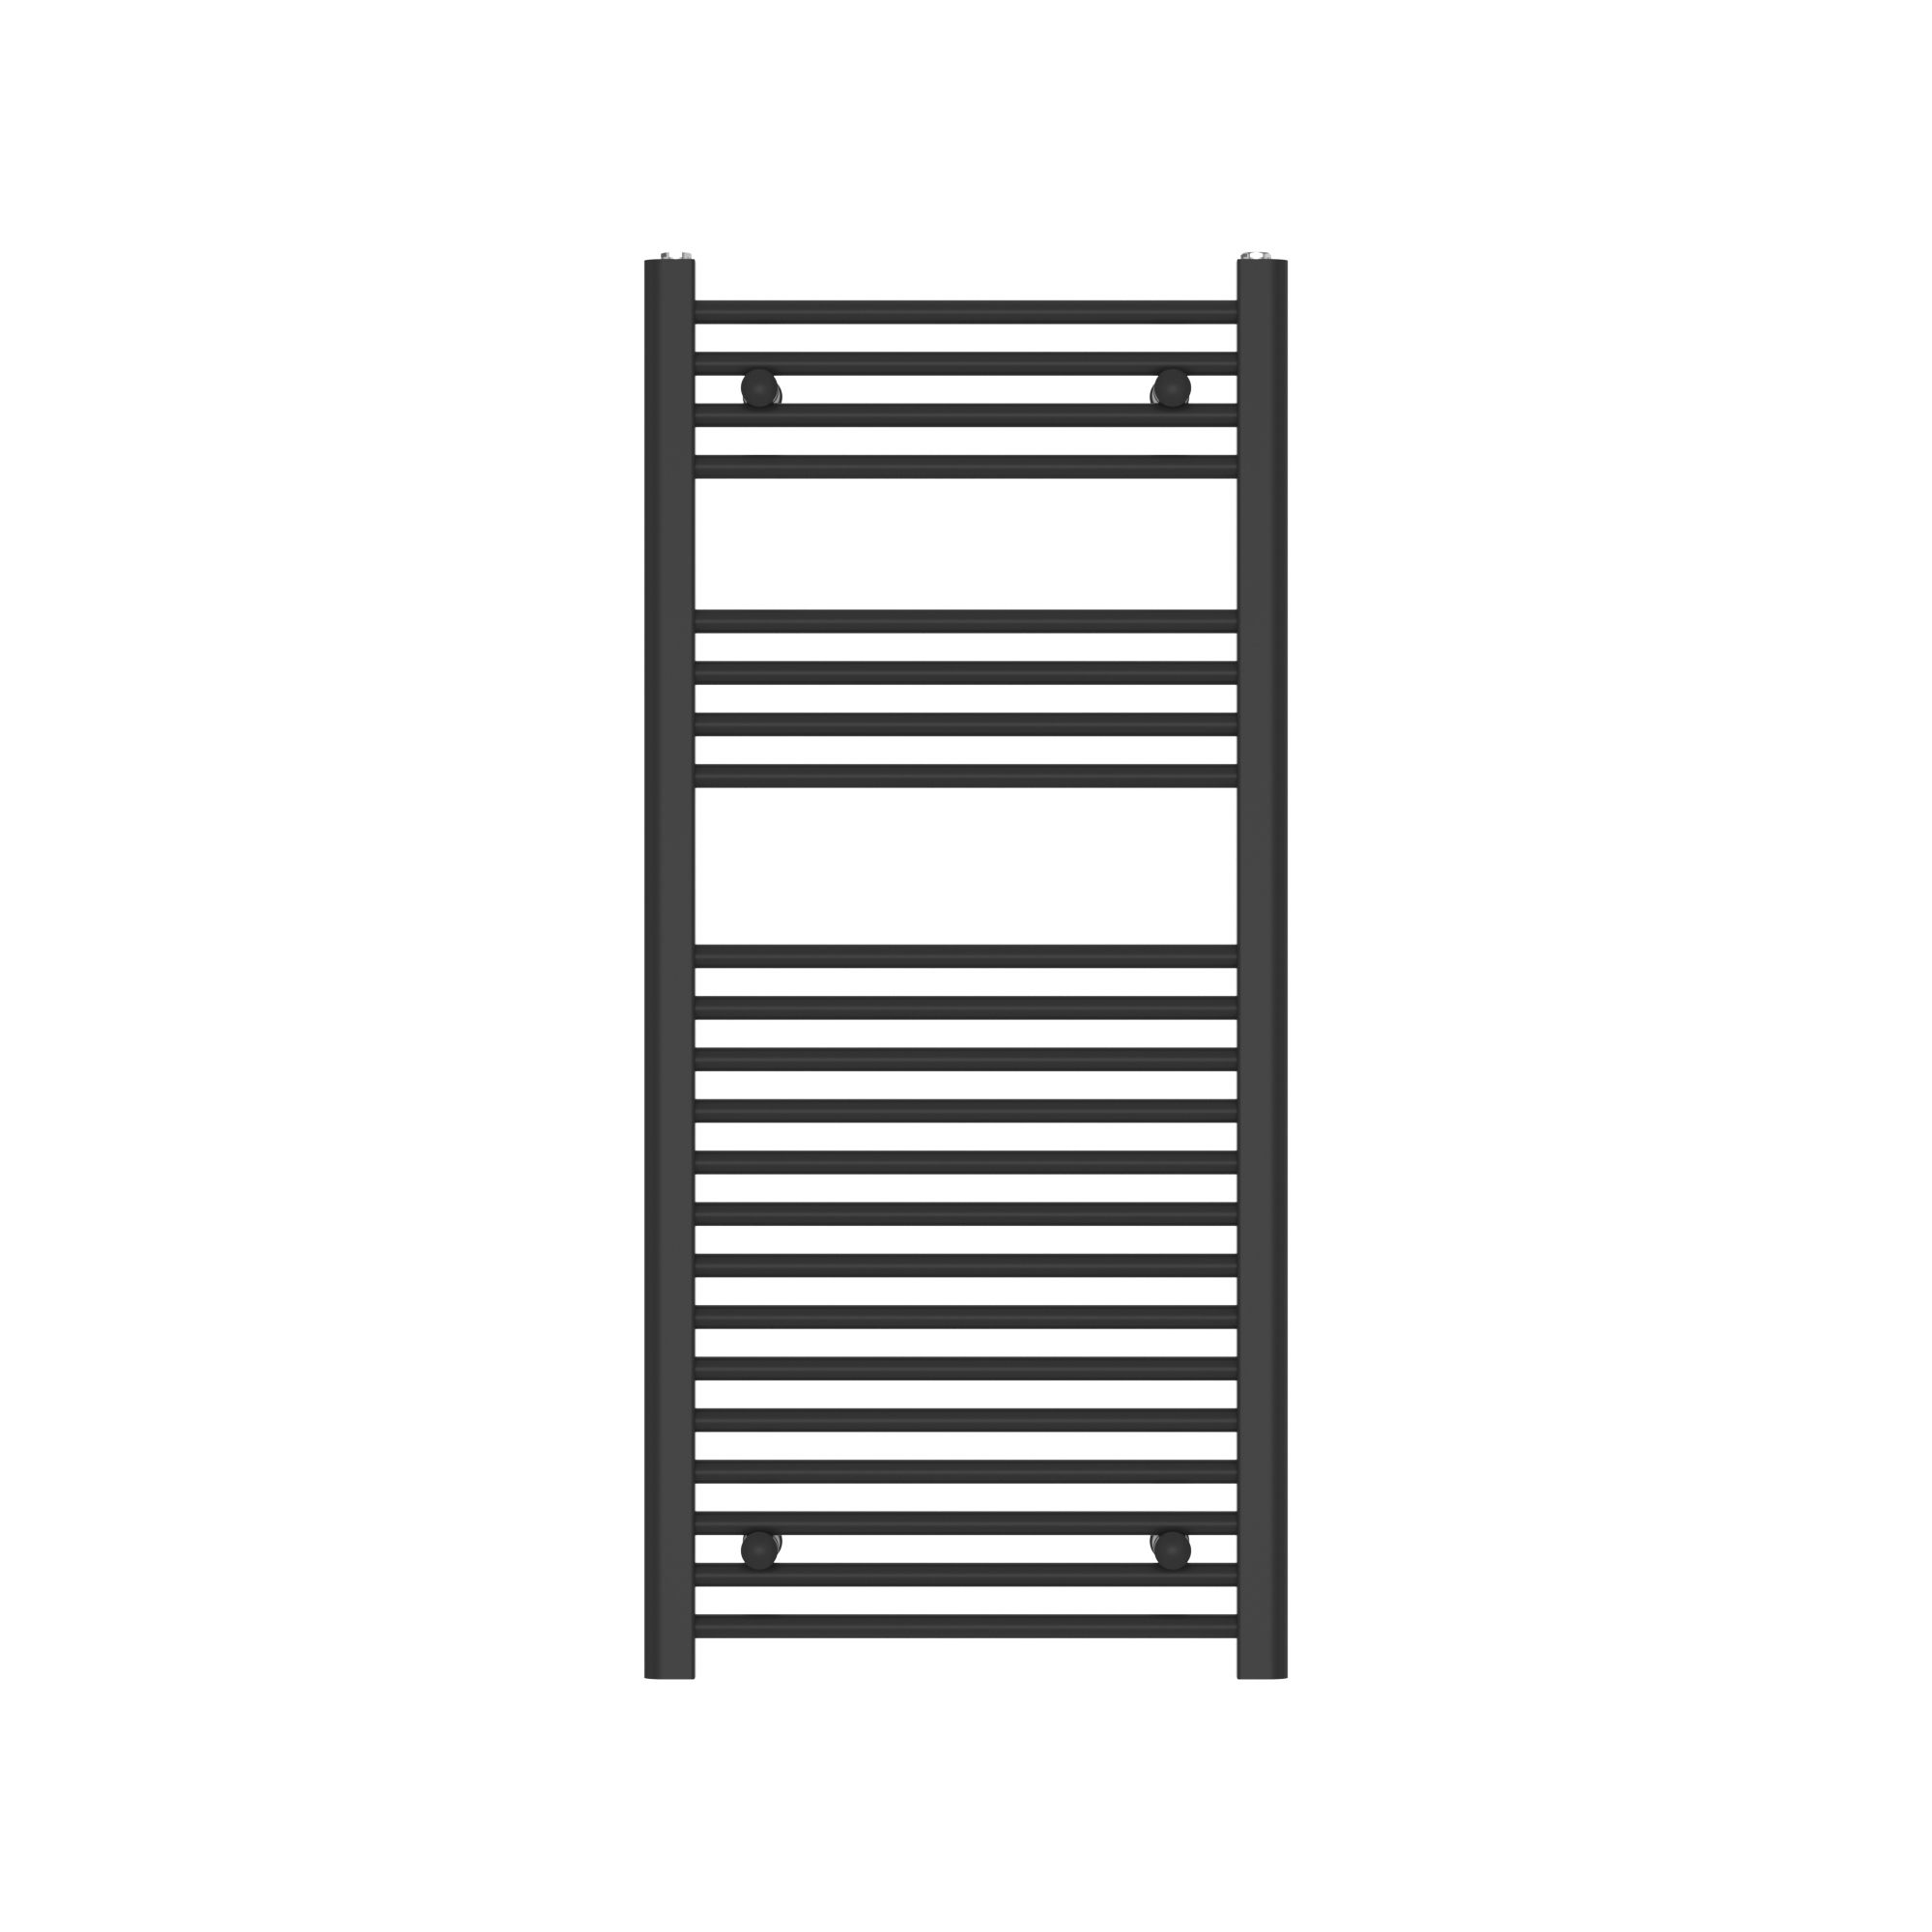 Flomasta Flat, Black Vertical Flat Towel radiator (W)500mm x (H)1100mm